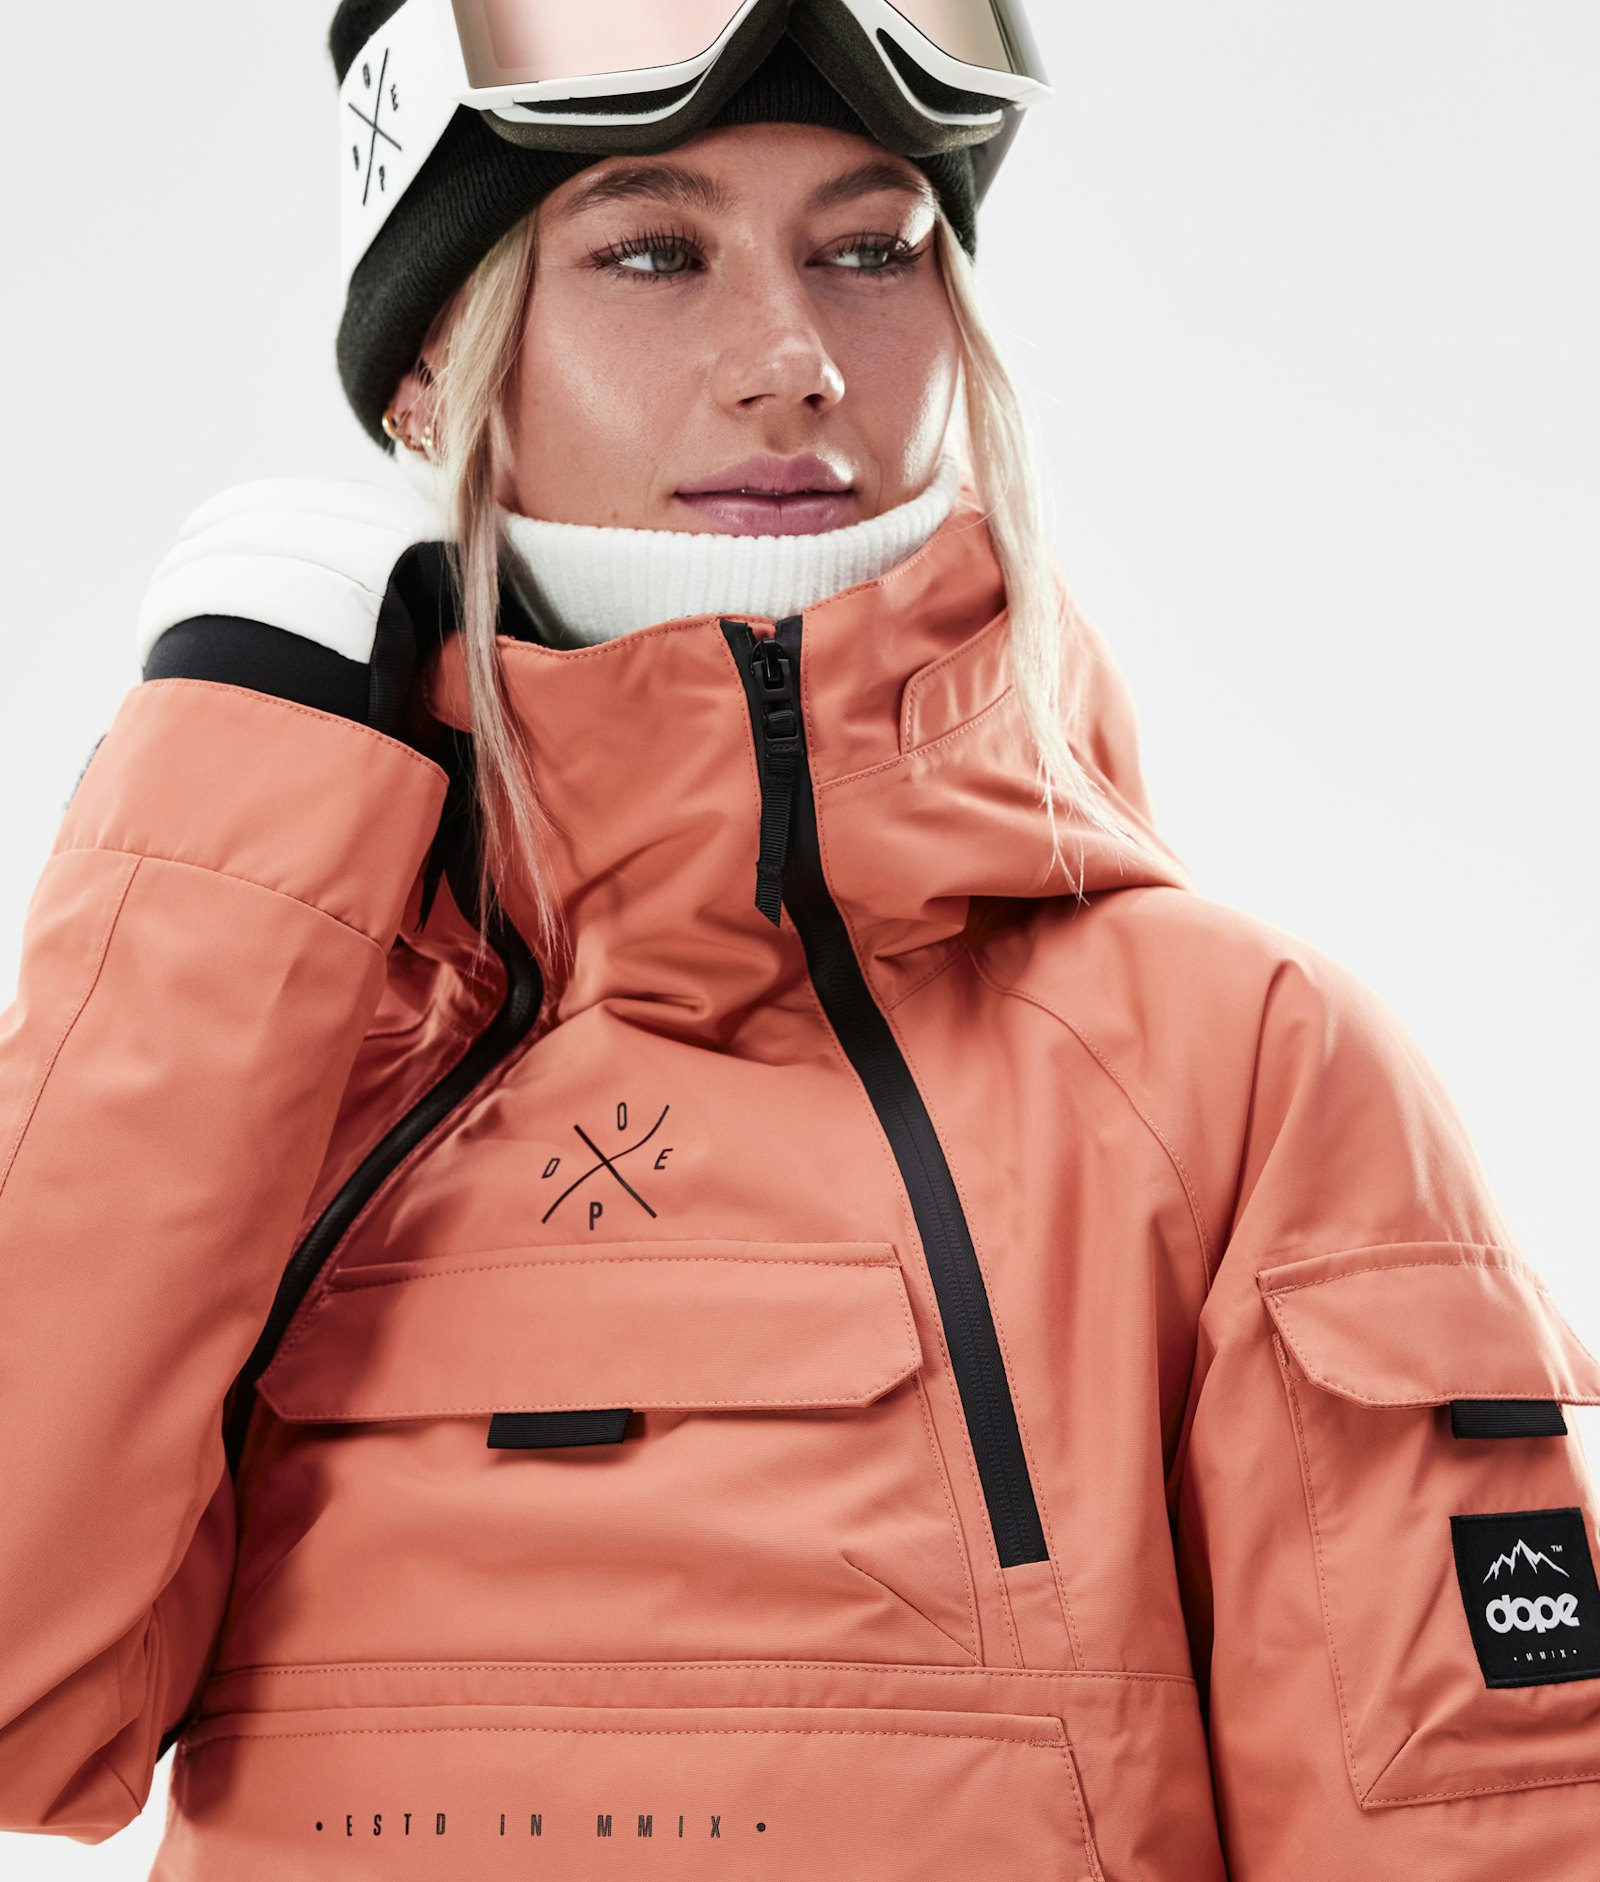 Dope Akin W 2021 Snowboardjacke Damen Peach